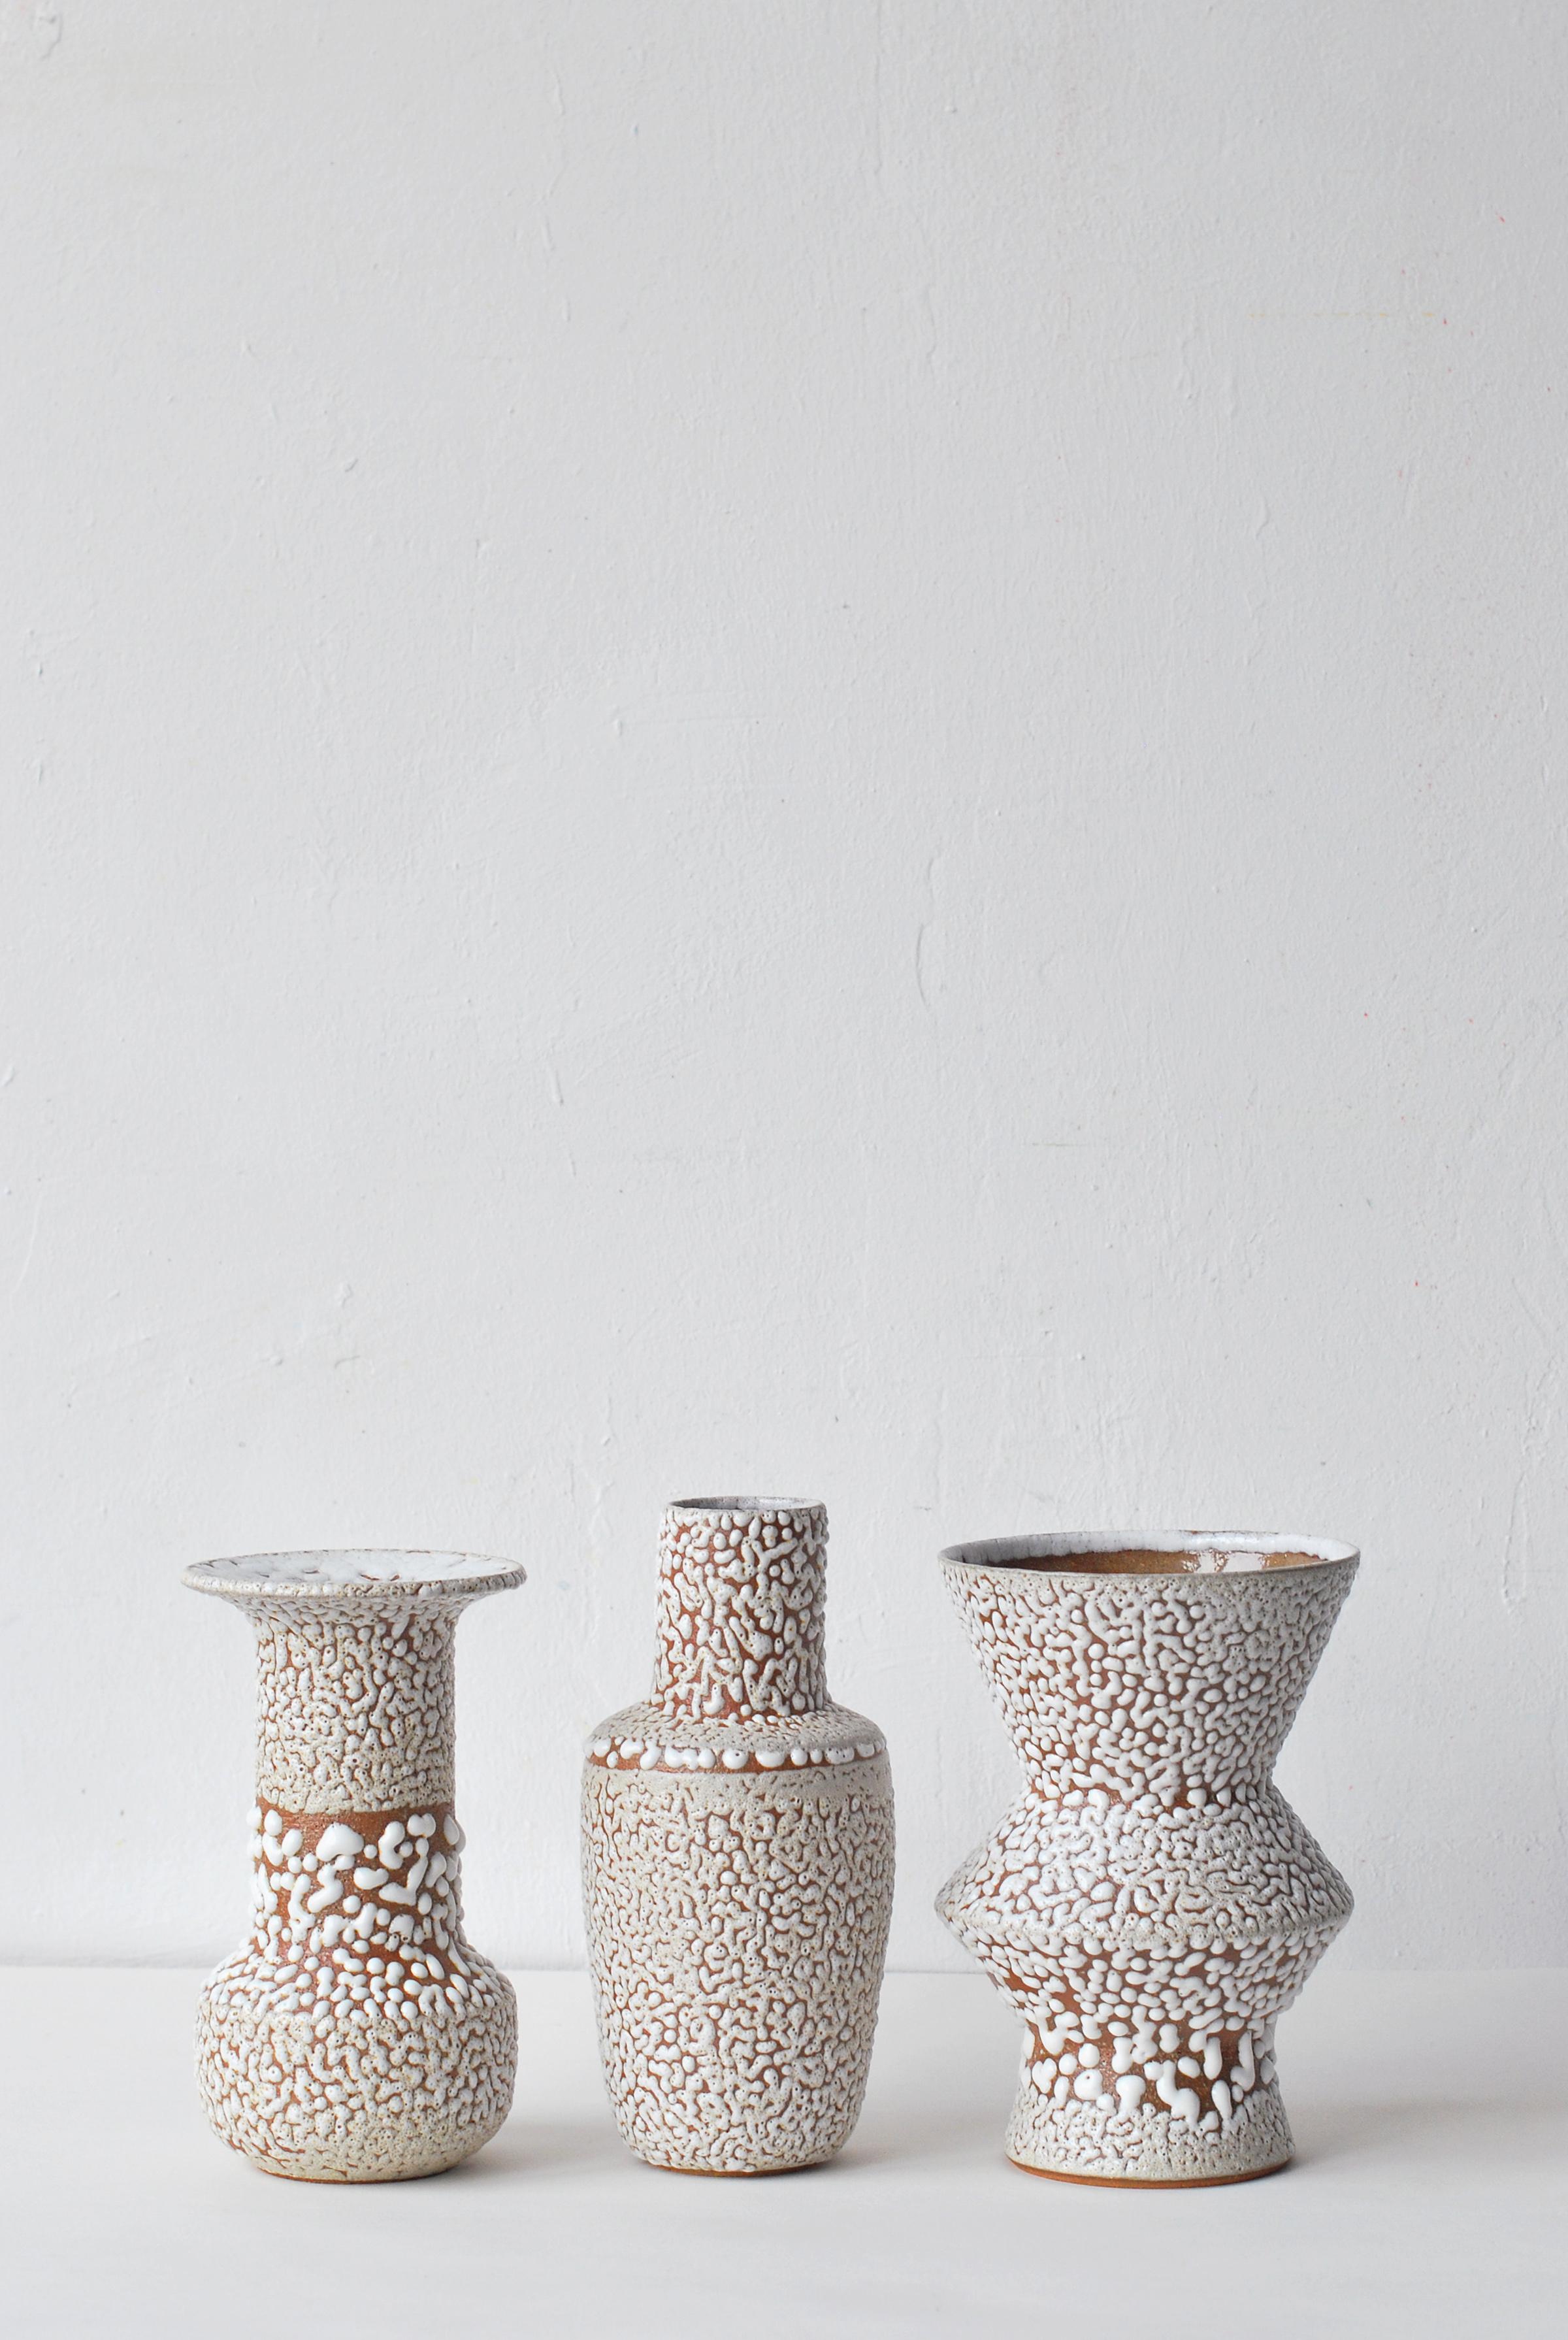 Contemporary White Stoneware Vase by Moïo Studio